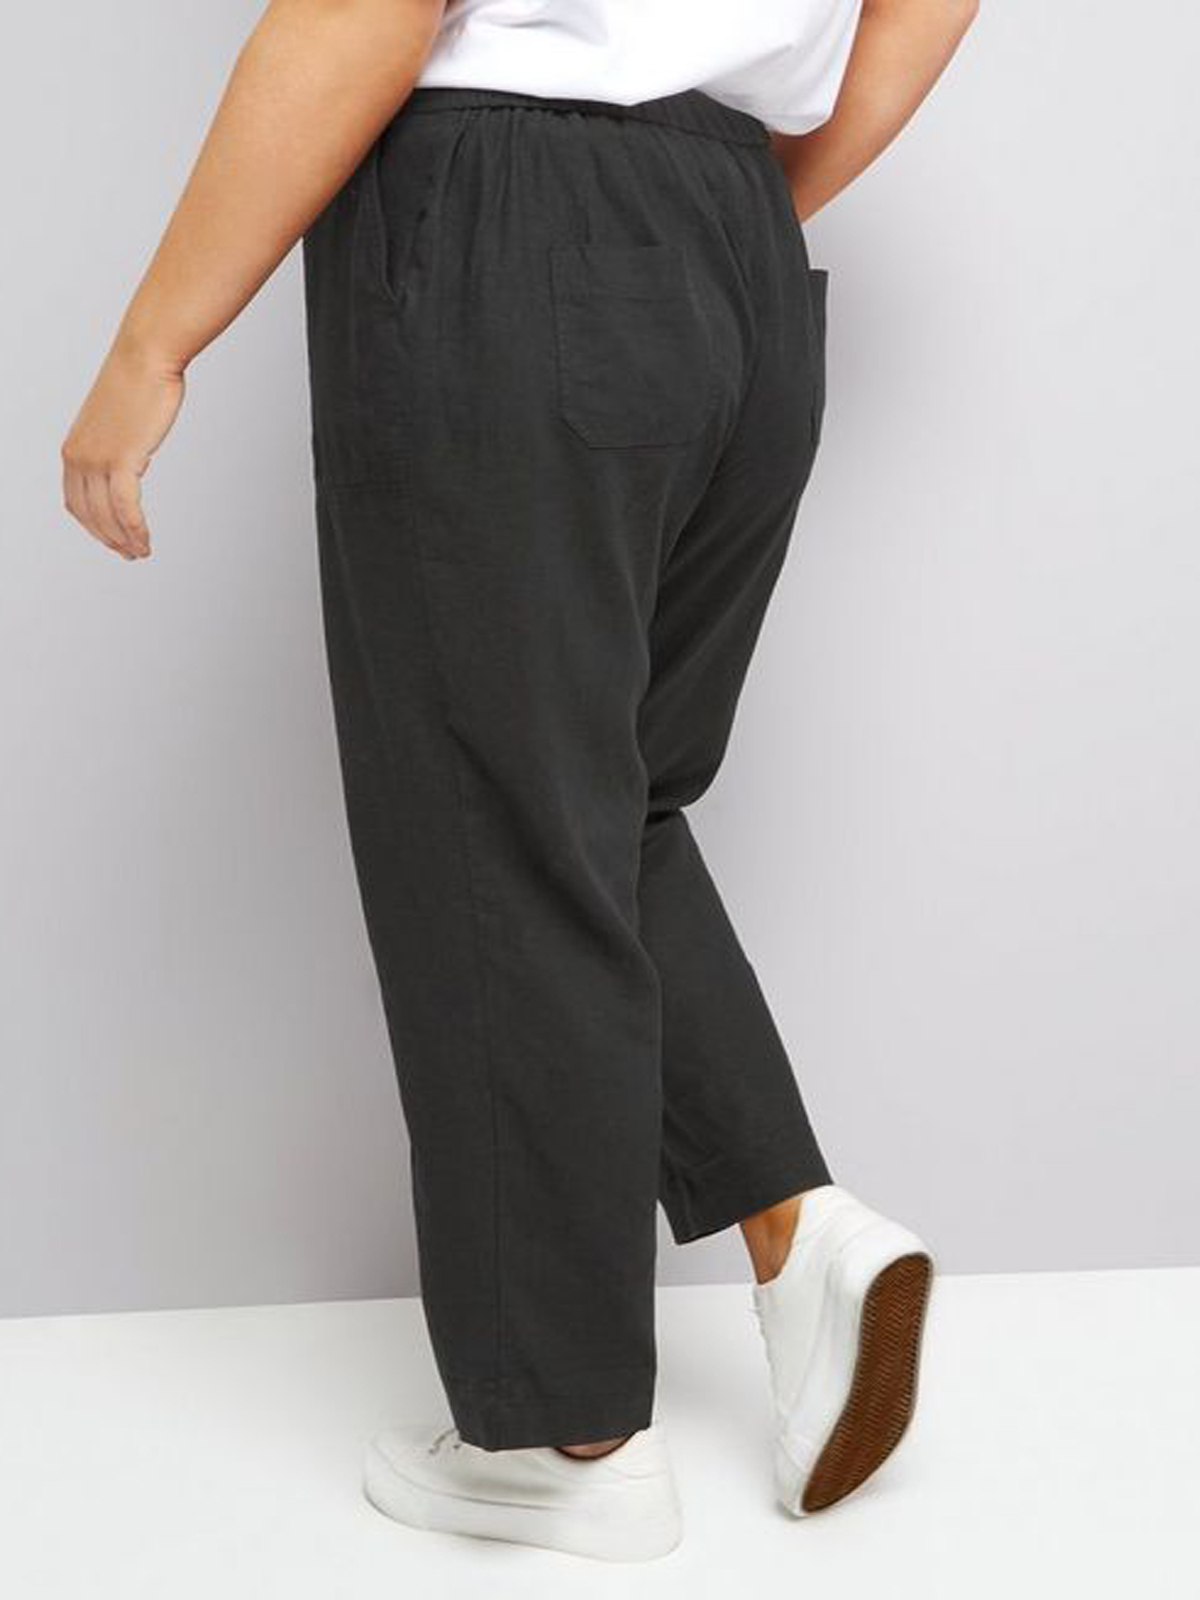 N3w L00k Curve BLACK Linen Blend Drawstring Trousers - Plus Size 20 to 28